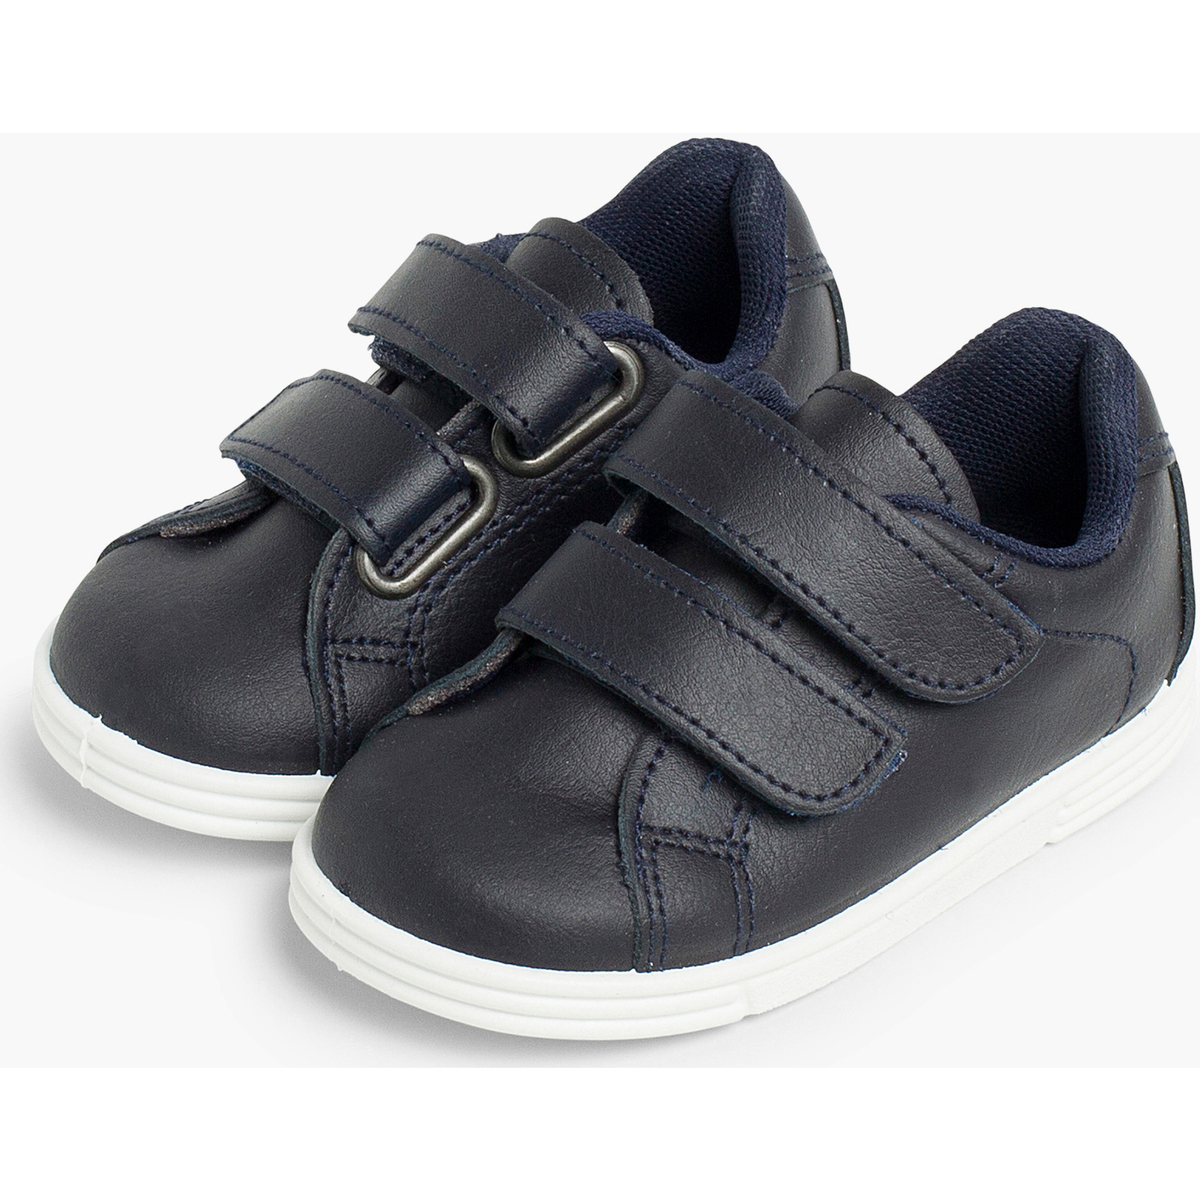 Pisamonas Bleu Chaussures de sport pour bébé et enfant cuir Lavable FuJNS014